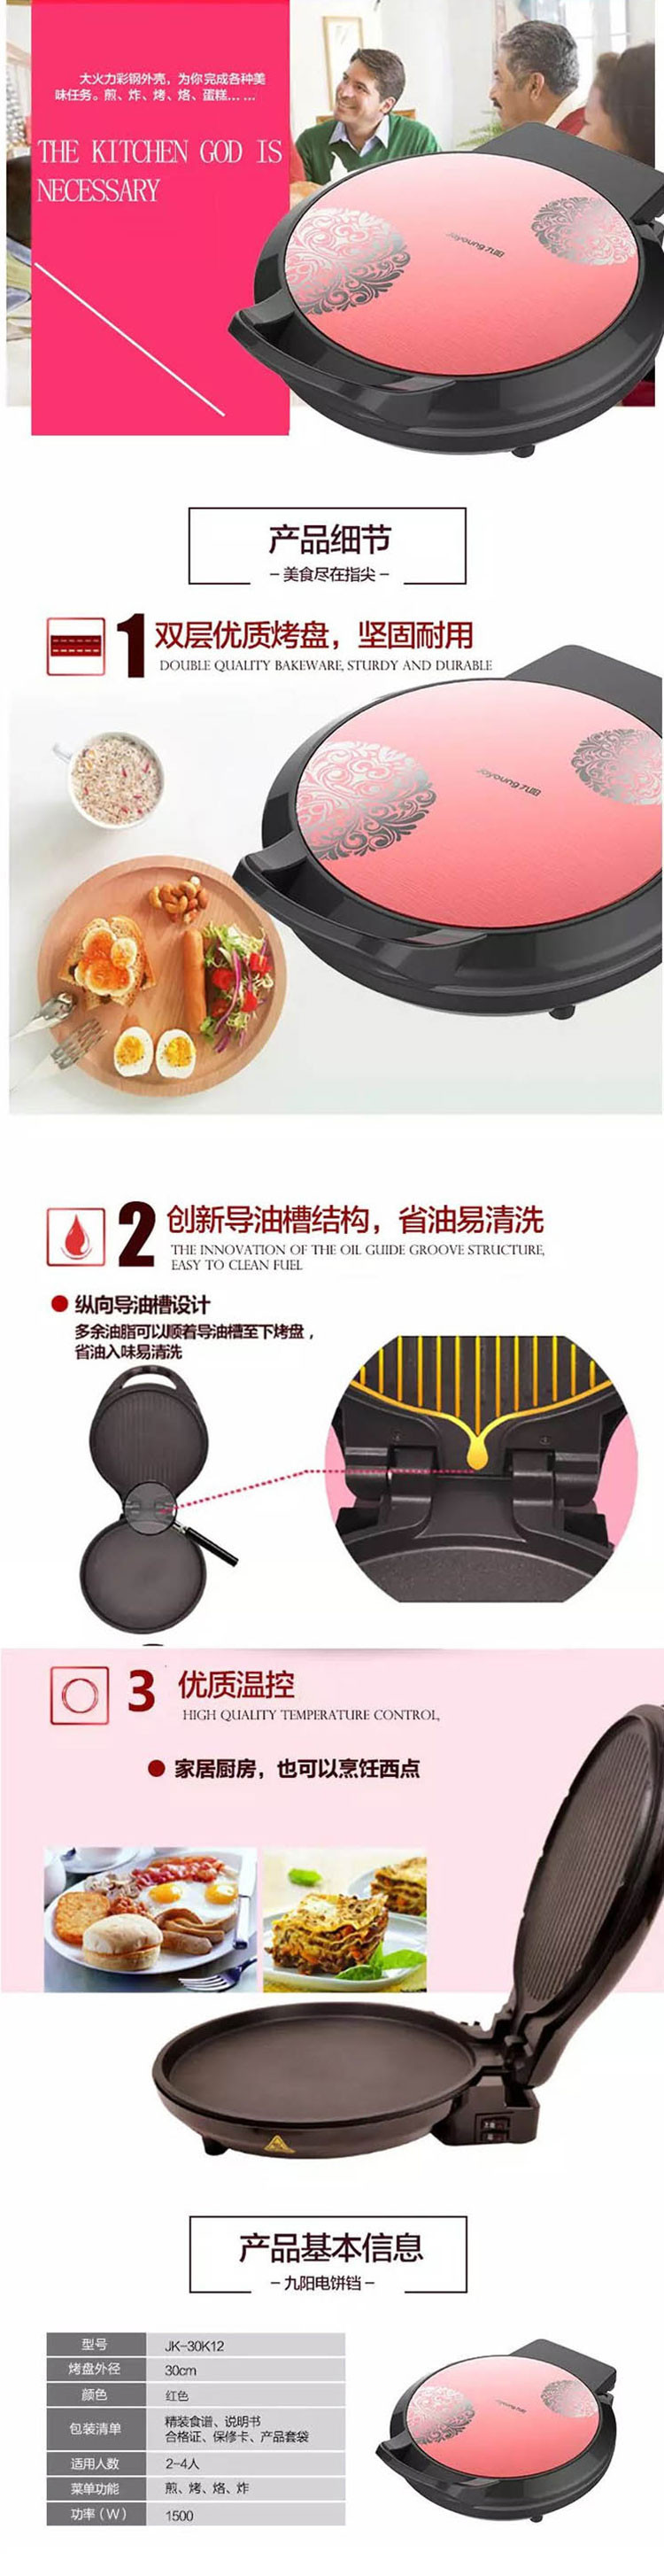 【邮乐新乡馆】九阳 电饼铛JK-30K12煎烤机双面加热多功能蛋糕机